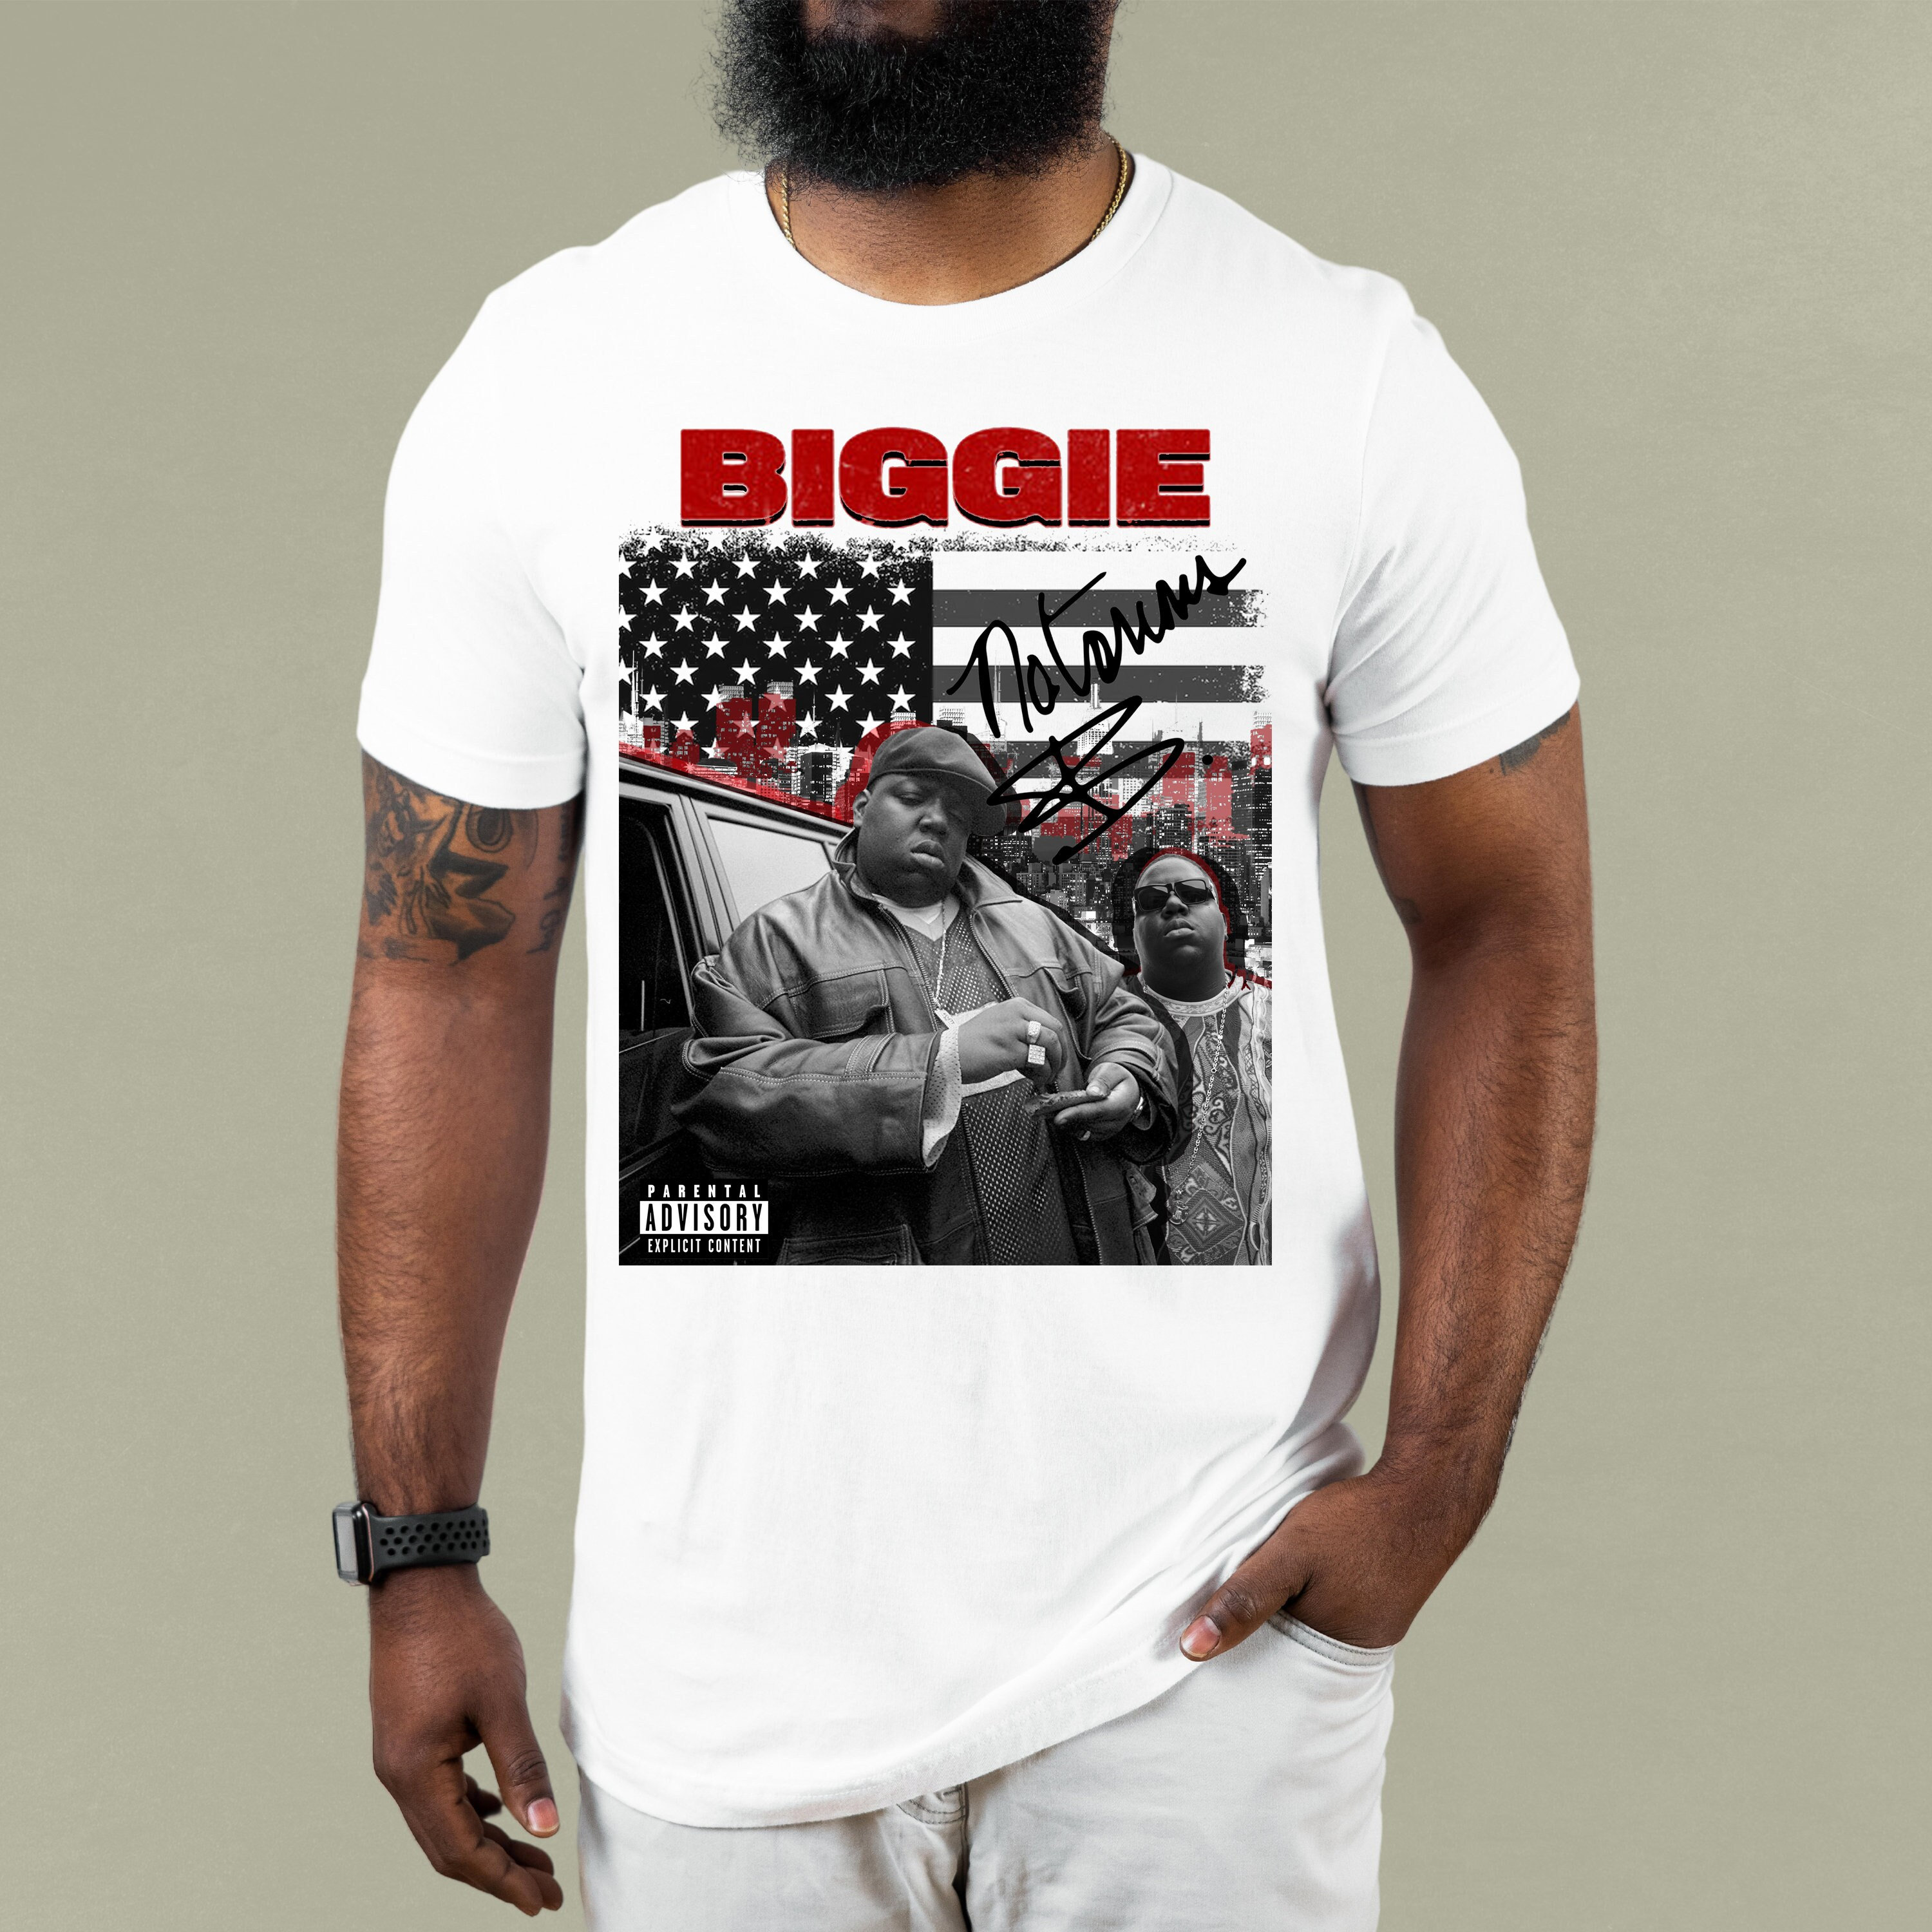 Vintage BIGGIE SMALLS “JUICY” Rap Lyrics Black Brooklyn Mint T